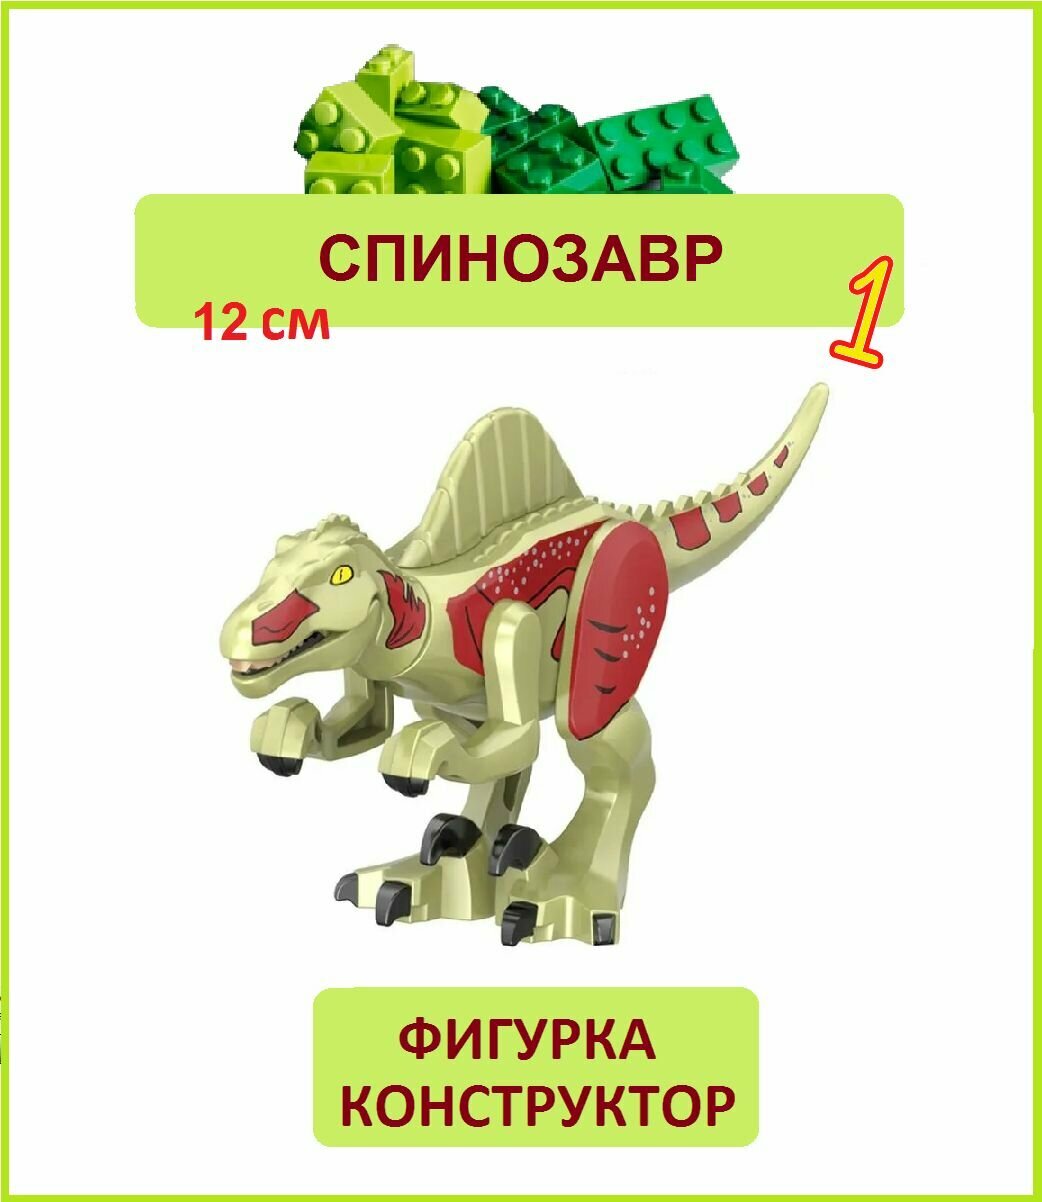 Спинозавр бежевый 12 см, фигурка конструктор, Парк Юрского периода, пакет